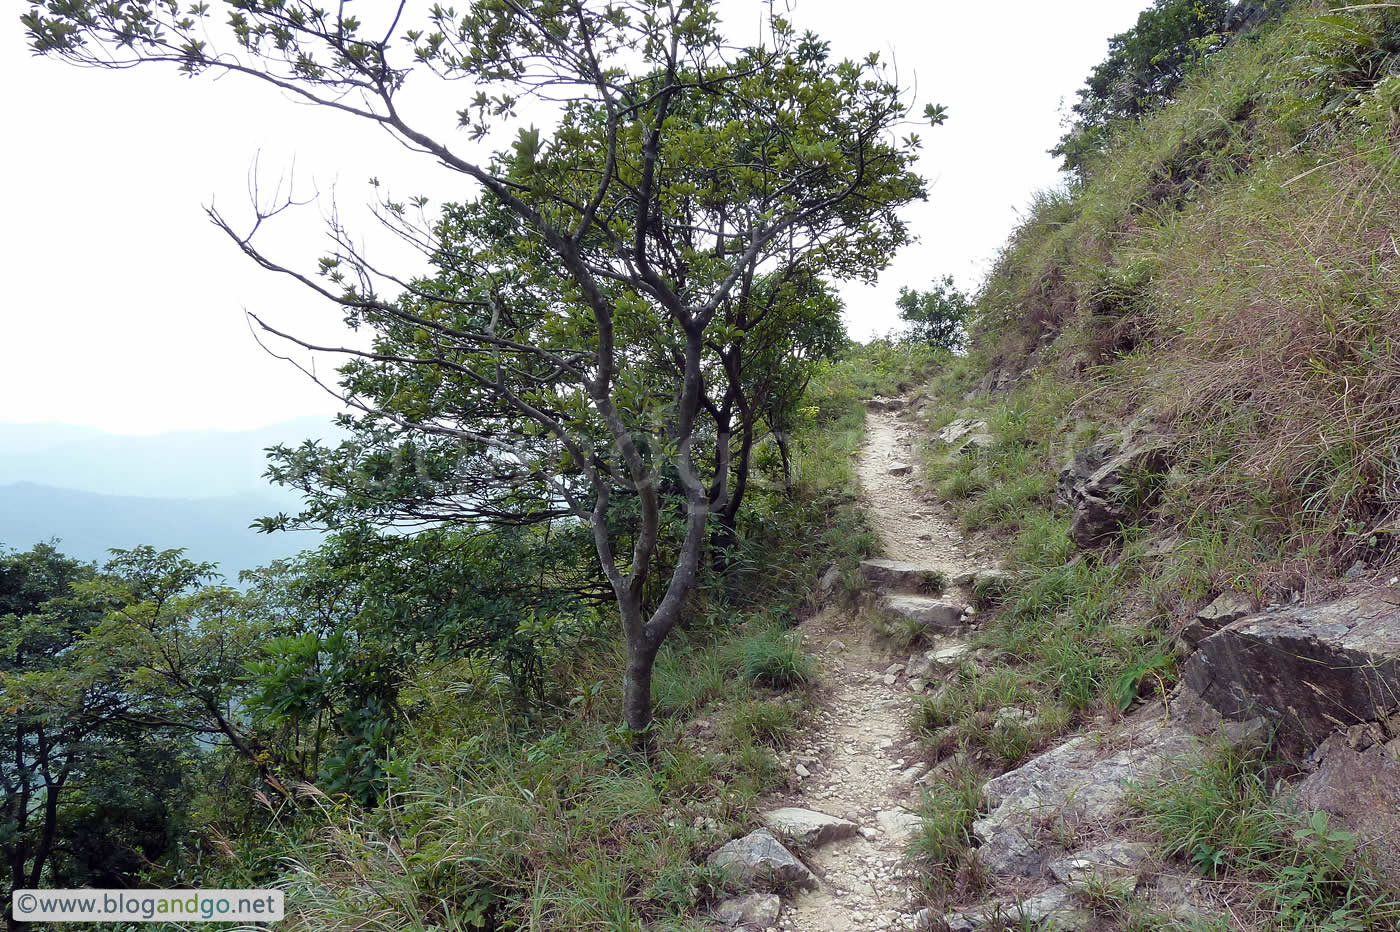 Lantau Trail - Mountain path